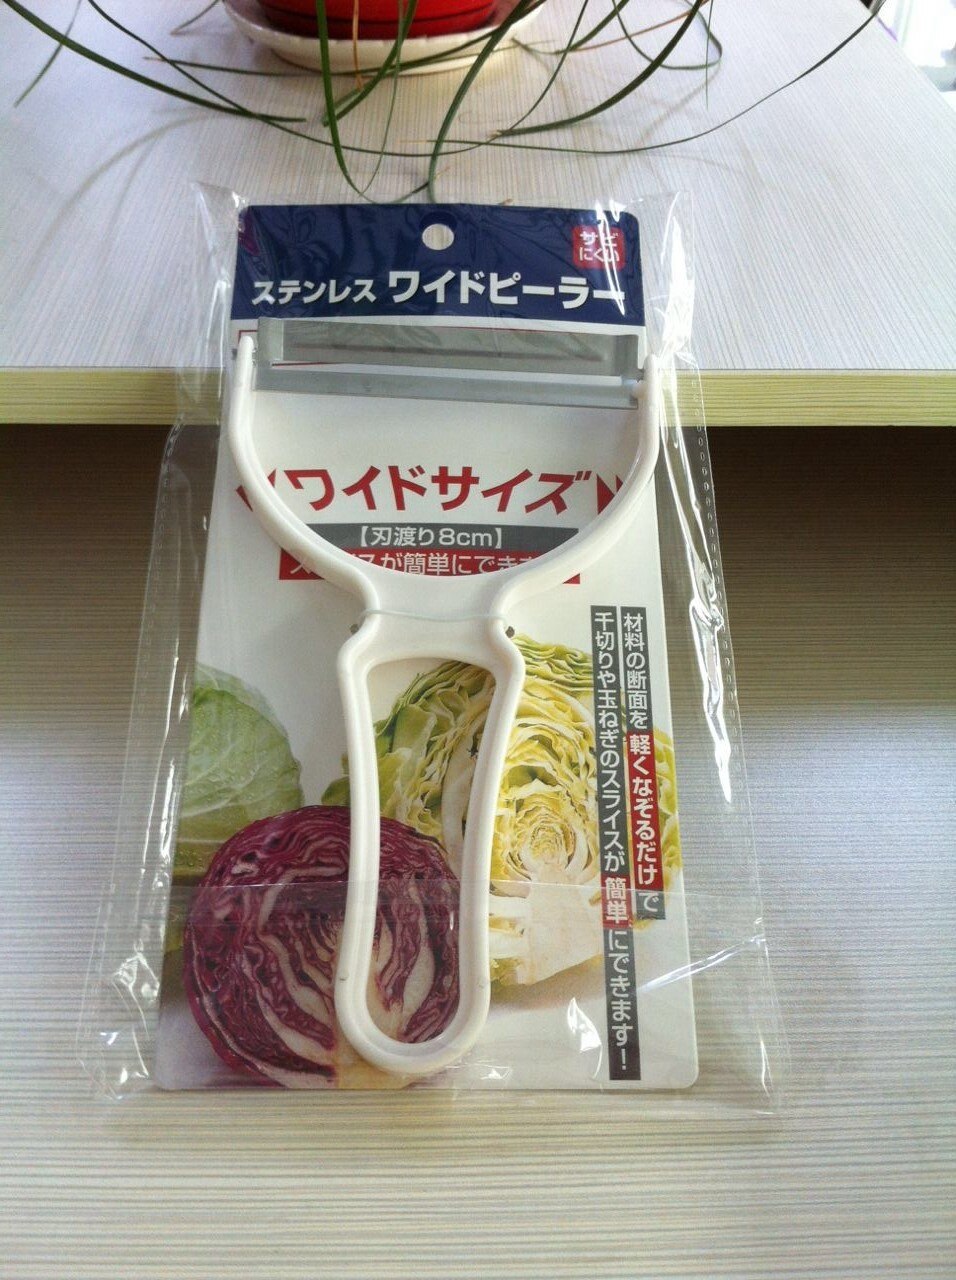 Japan Jumbo Rvs Kool Rasp Dunschiller Salade Essentiële Rasp Groente Dunschiller Kool Rasp Slicer Cutter